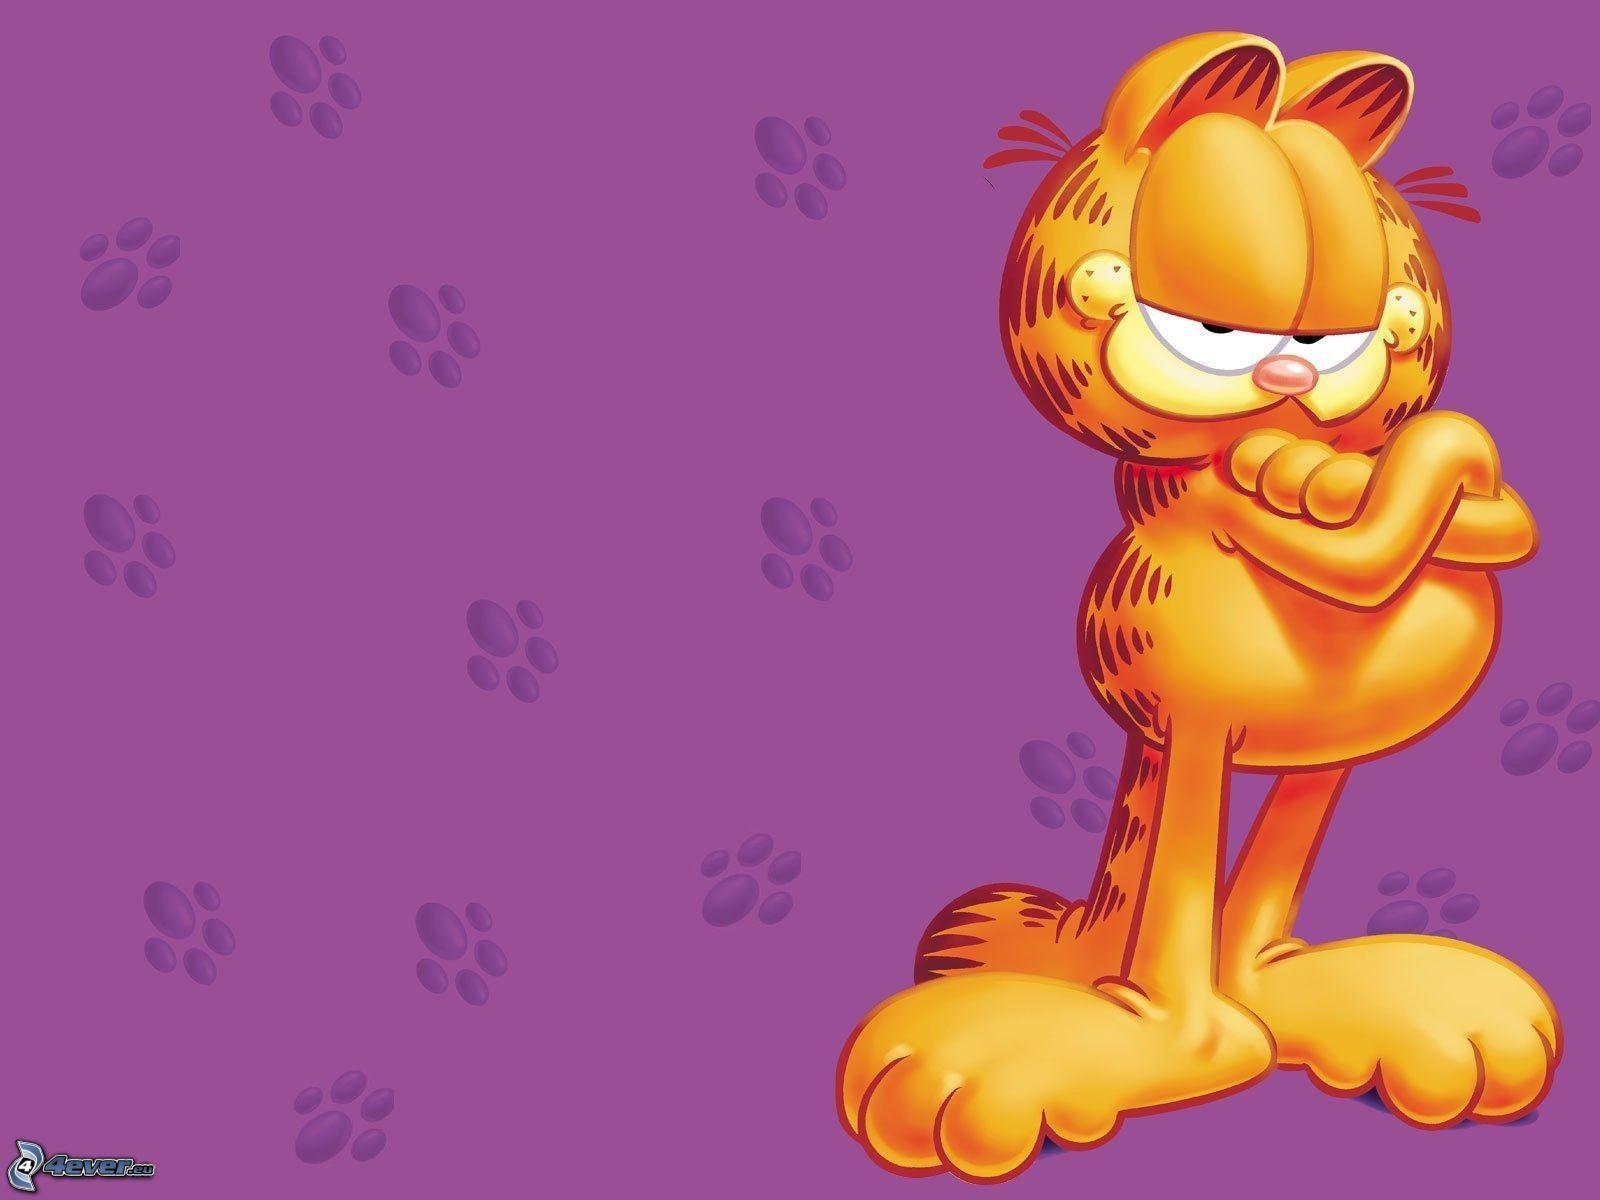 FHDQ Garfield Wallpaper Widescreen for free